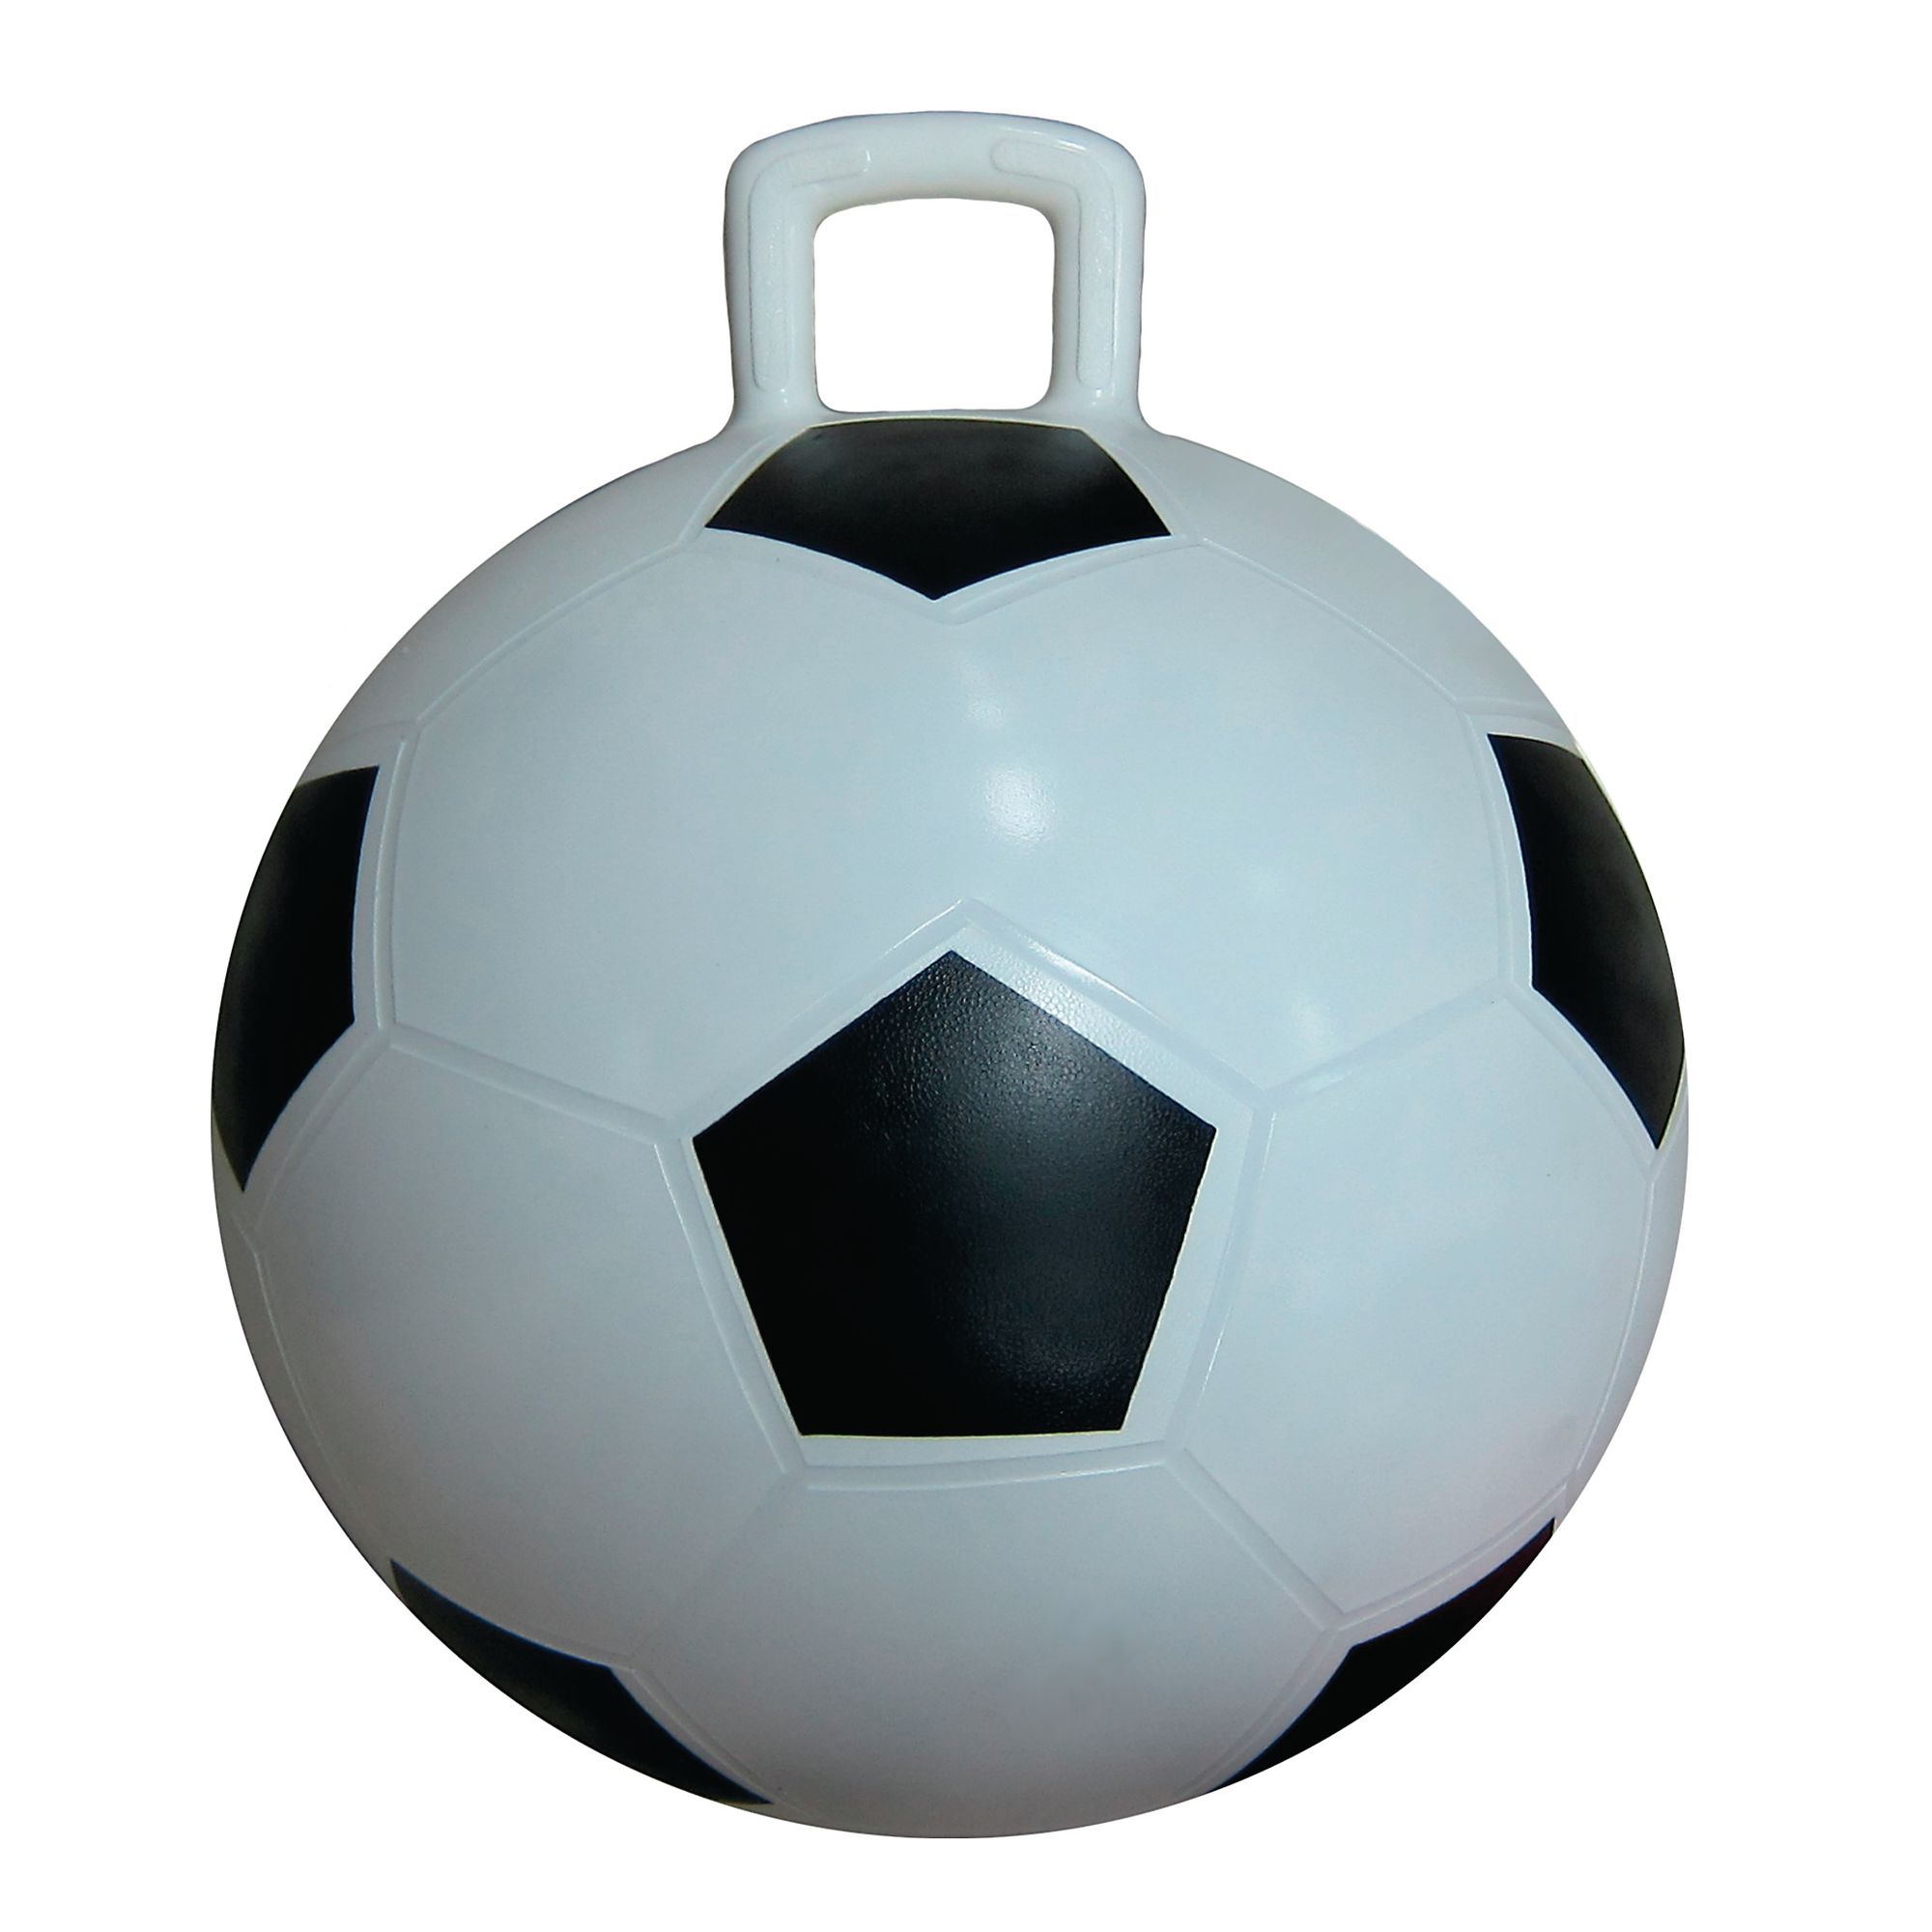 Soccer Hopper Ball - 45cm - 4 Years